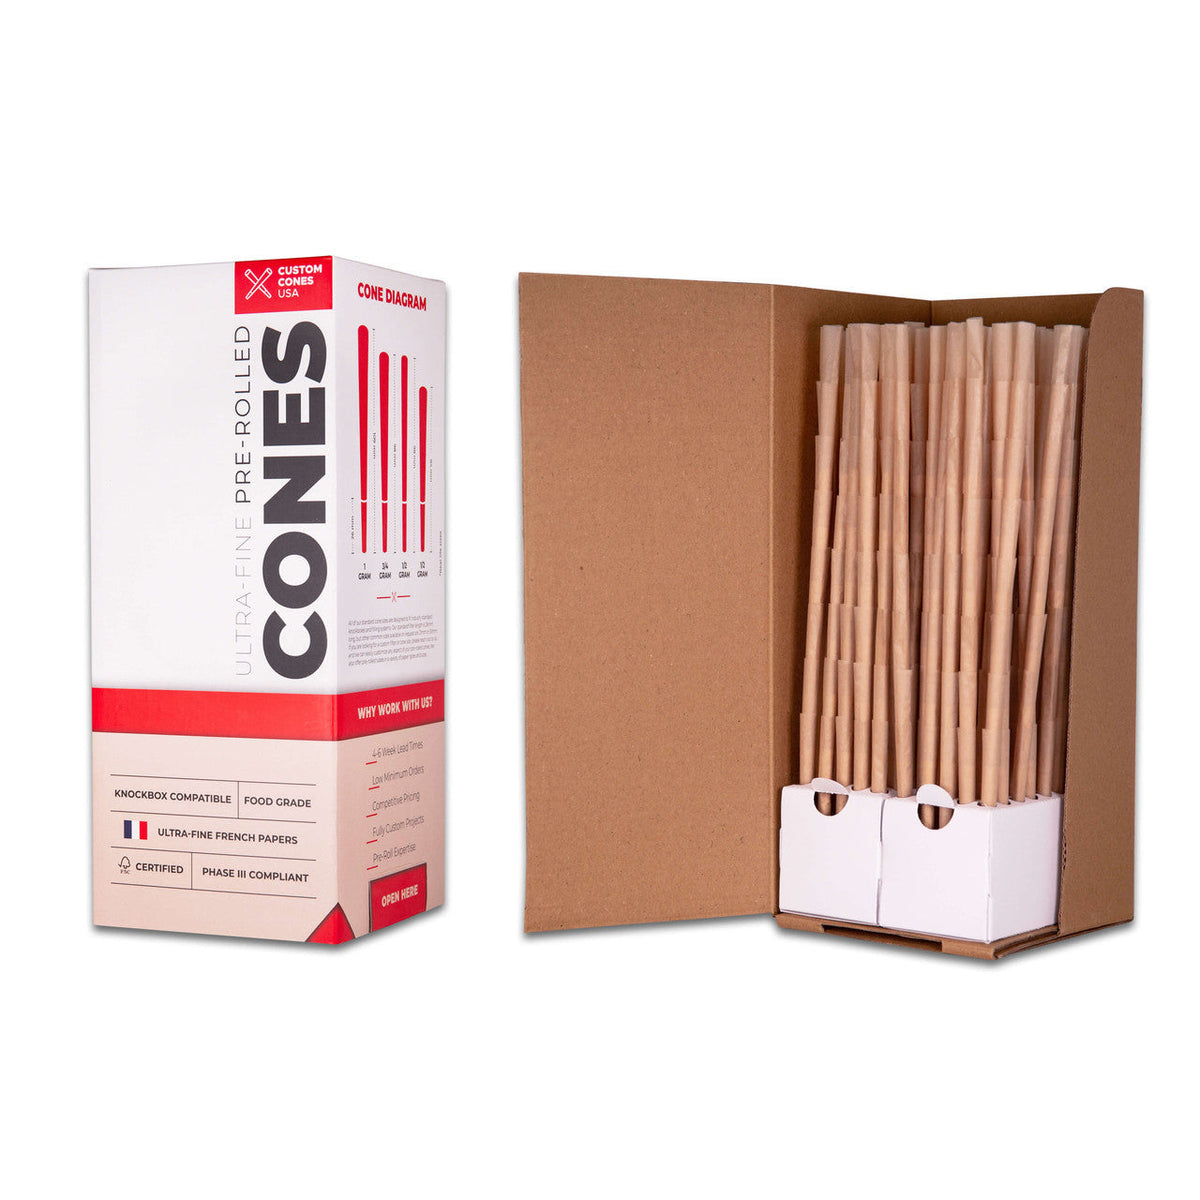 Custom Cones Custom Cones 98mm Reefer Pre-Rolled Cones - Unrefined Brown [800 Cones per Box]